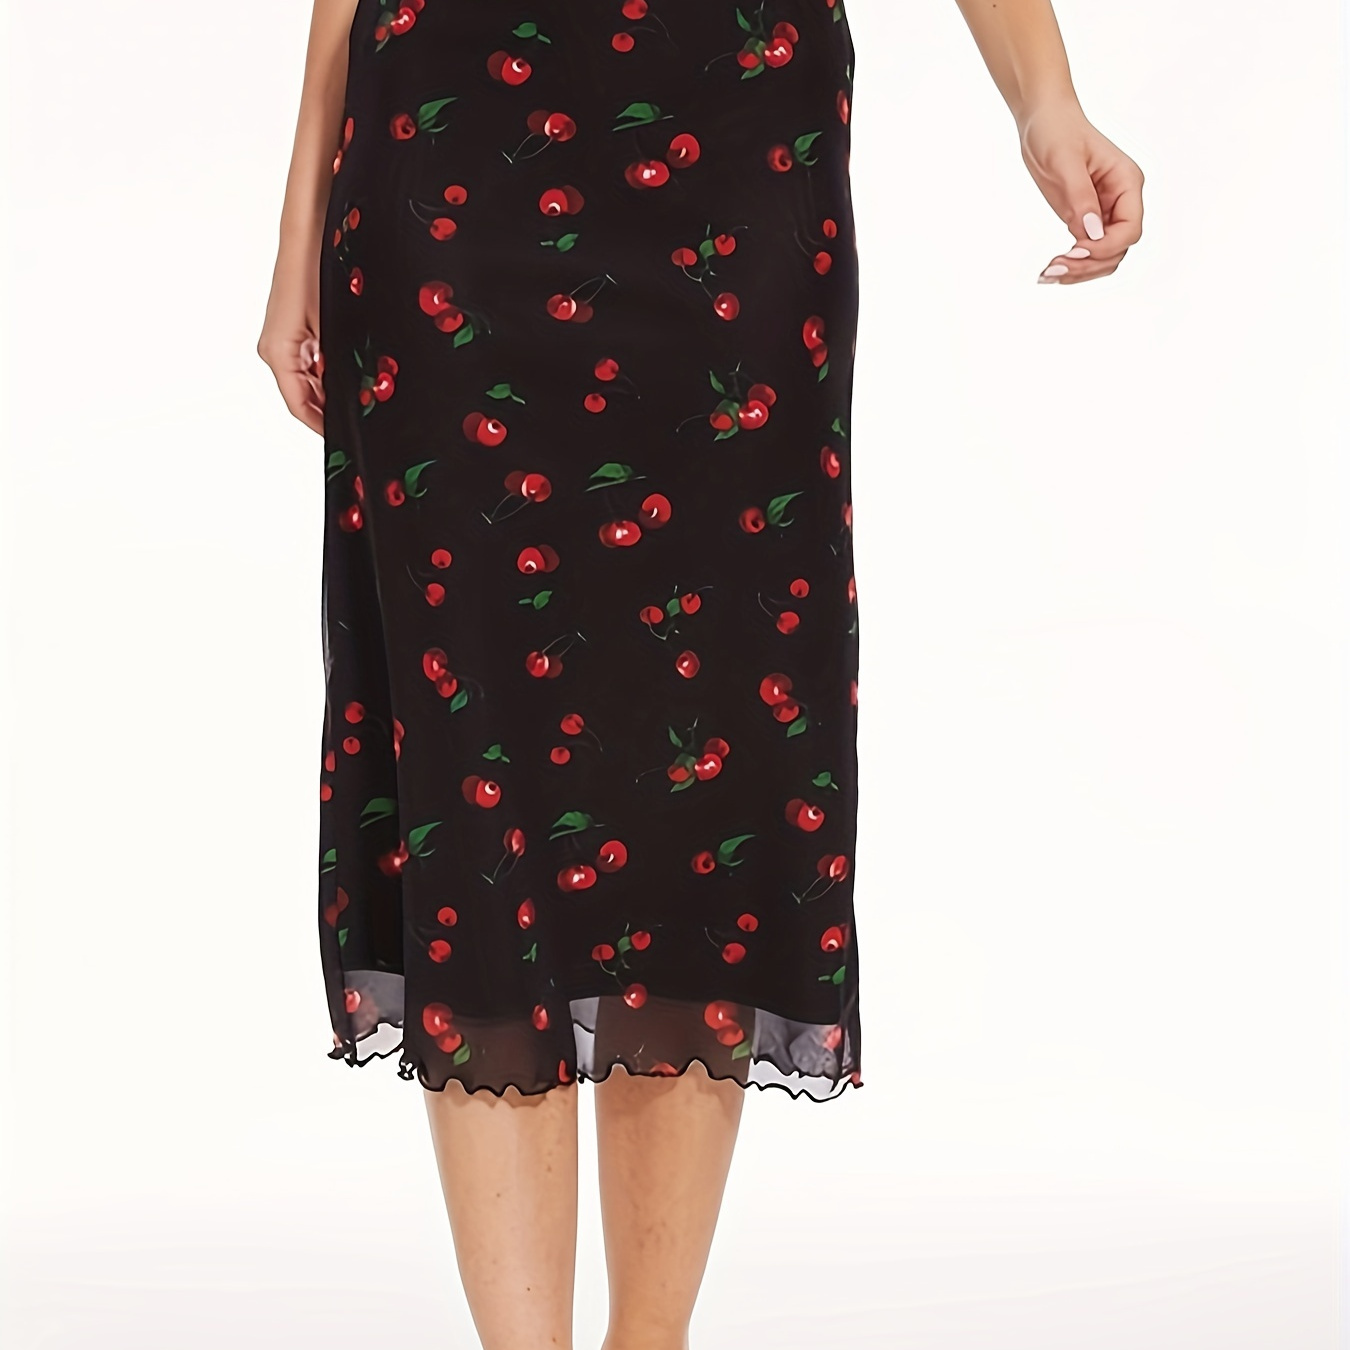 

Cherry Print Ballerina Length Sheath Skirt, Elegant High Waist Skirt For Spring & Summer, Women's Clothing